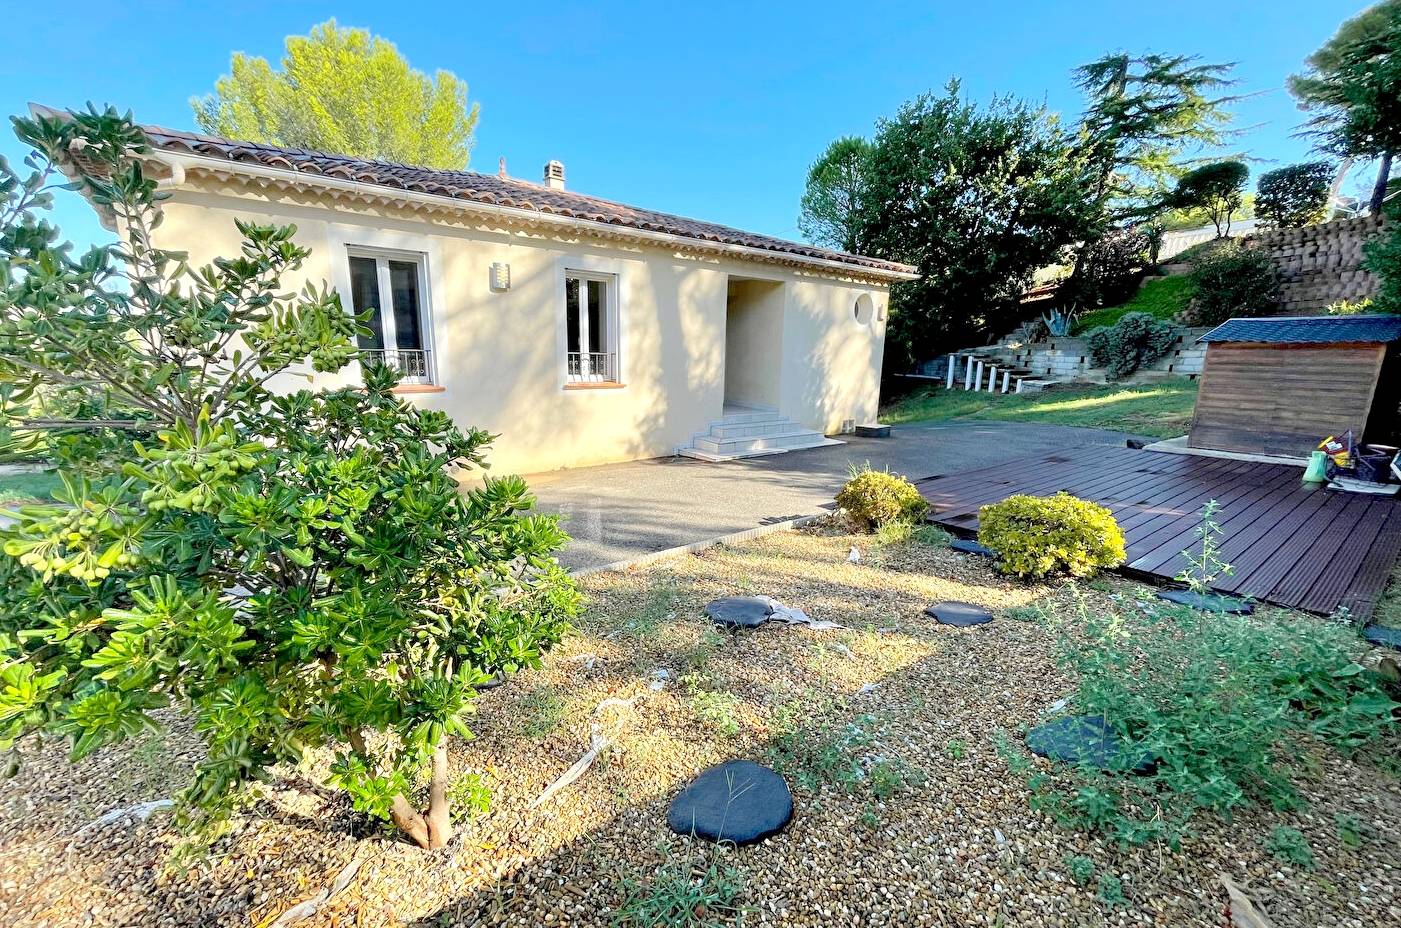 Villa de plain-pied avec jardin à vendre quartier de l'Aiguillette à La Seyne-sur-Mer